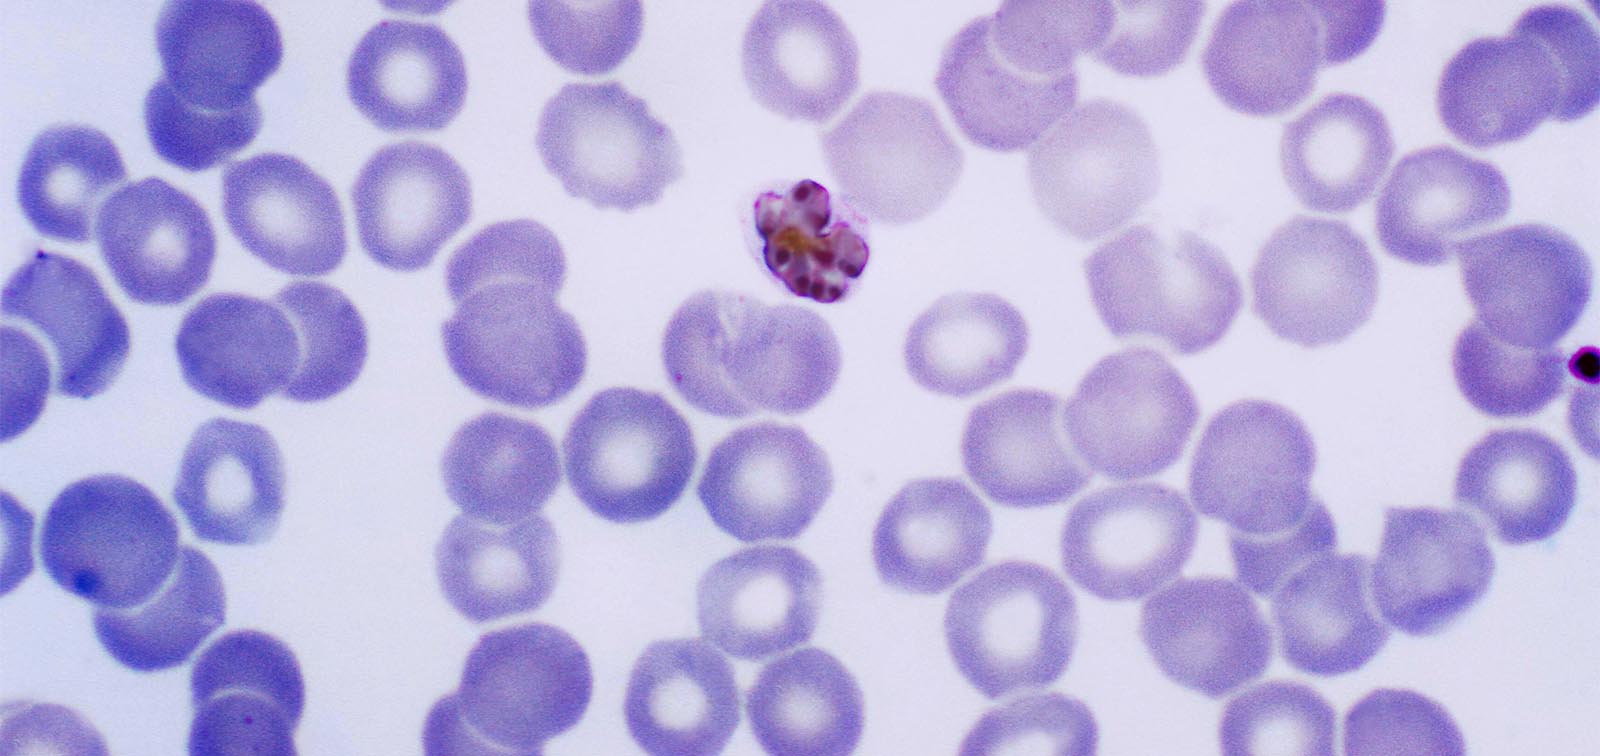 Mature 'Plasmodium malariae' schizont